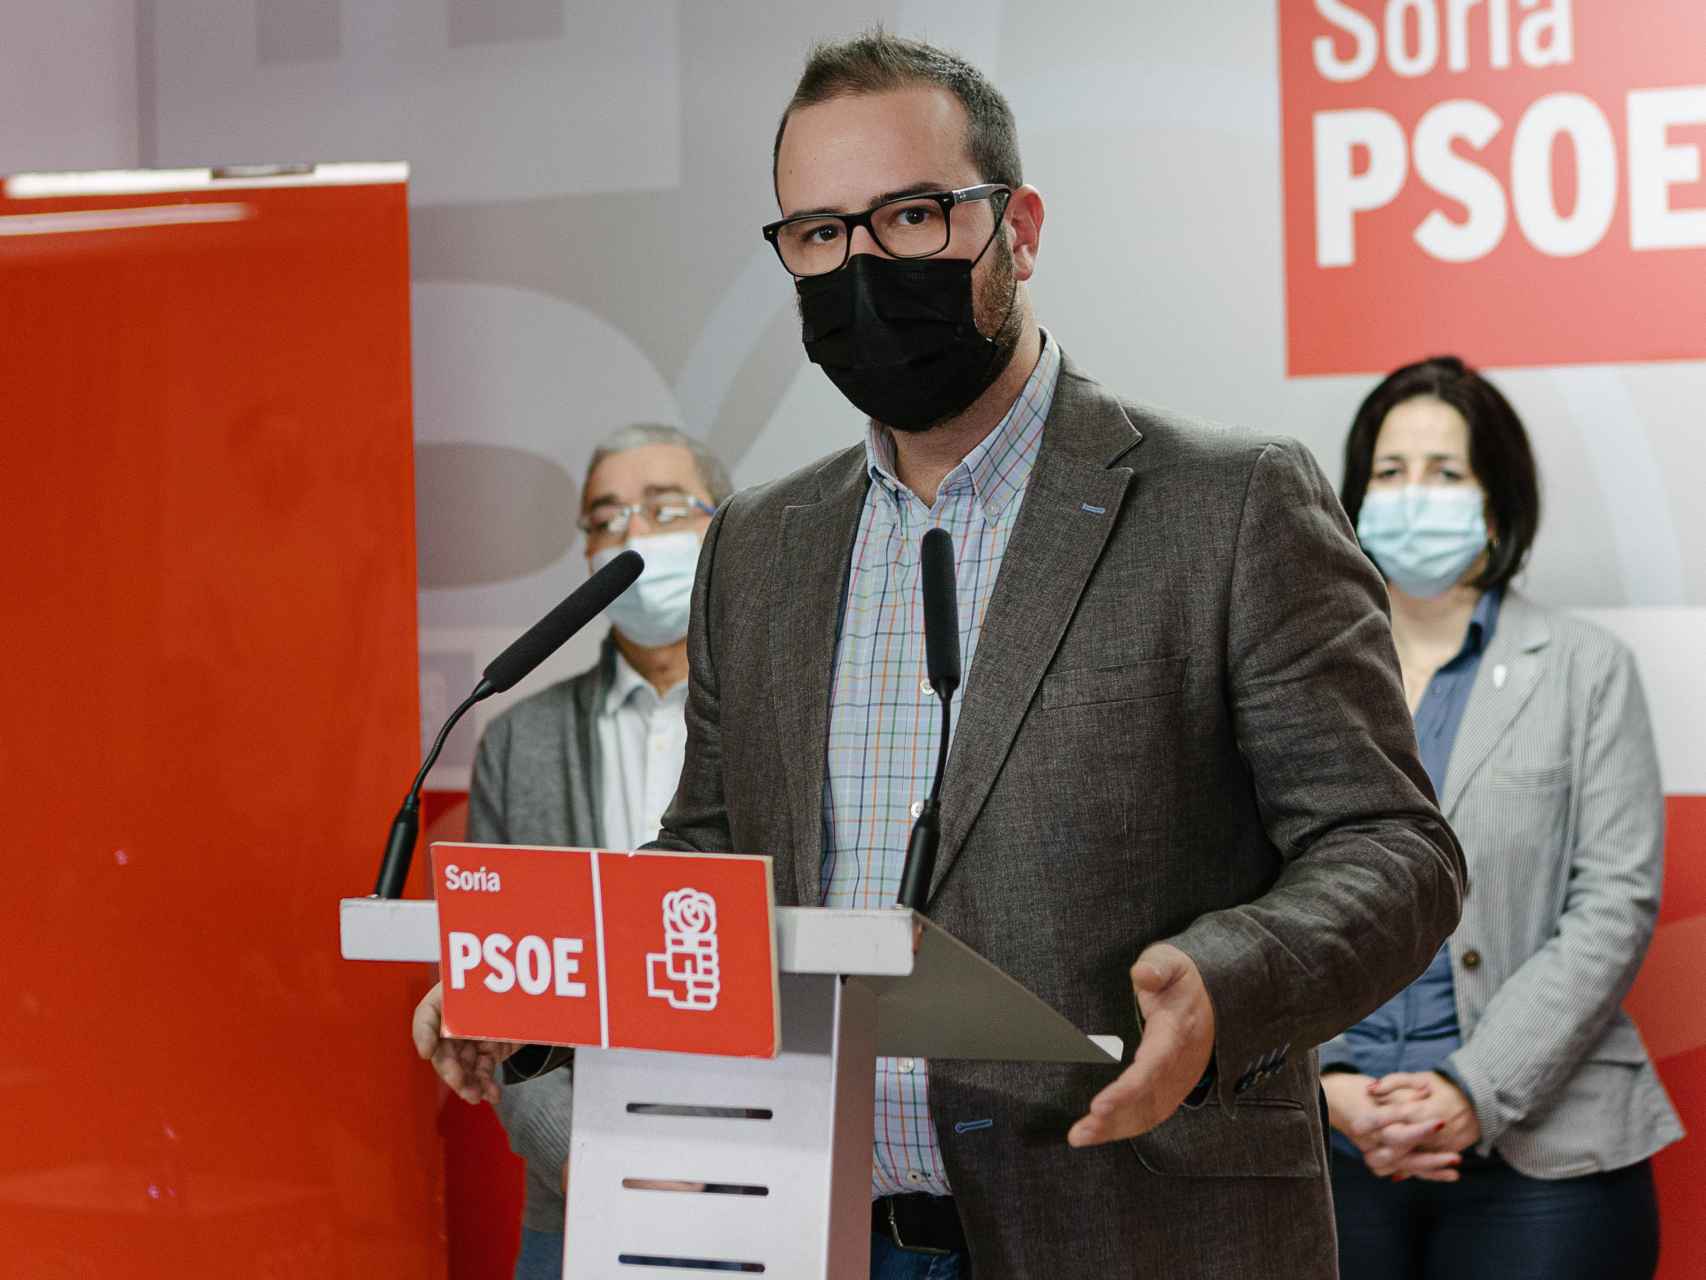 El cabeza de lista del PSOE en Soria, Ángel Hernández, en una imagen de archivo. / ICAL